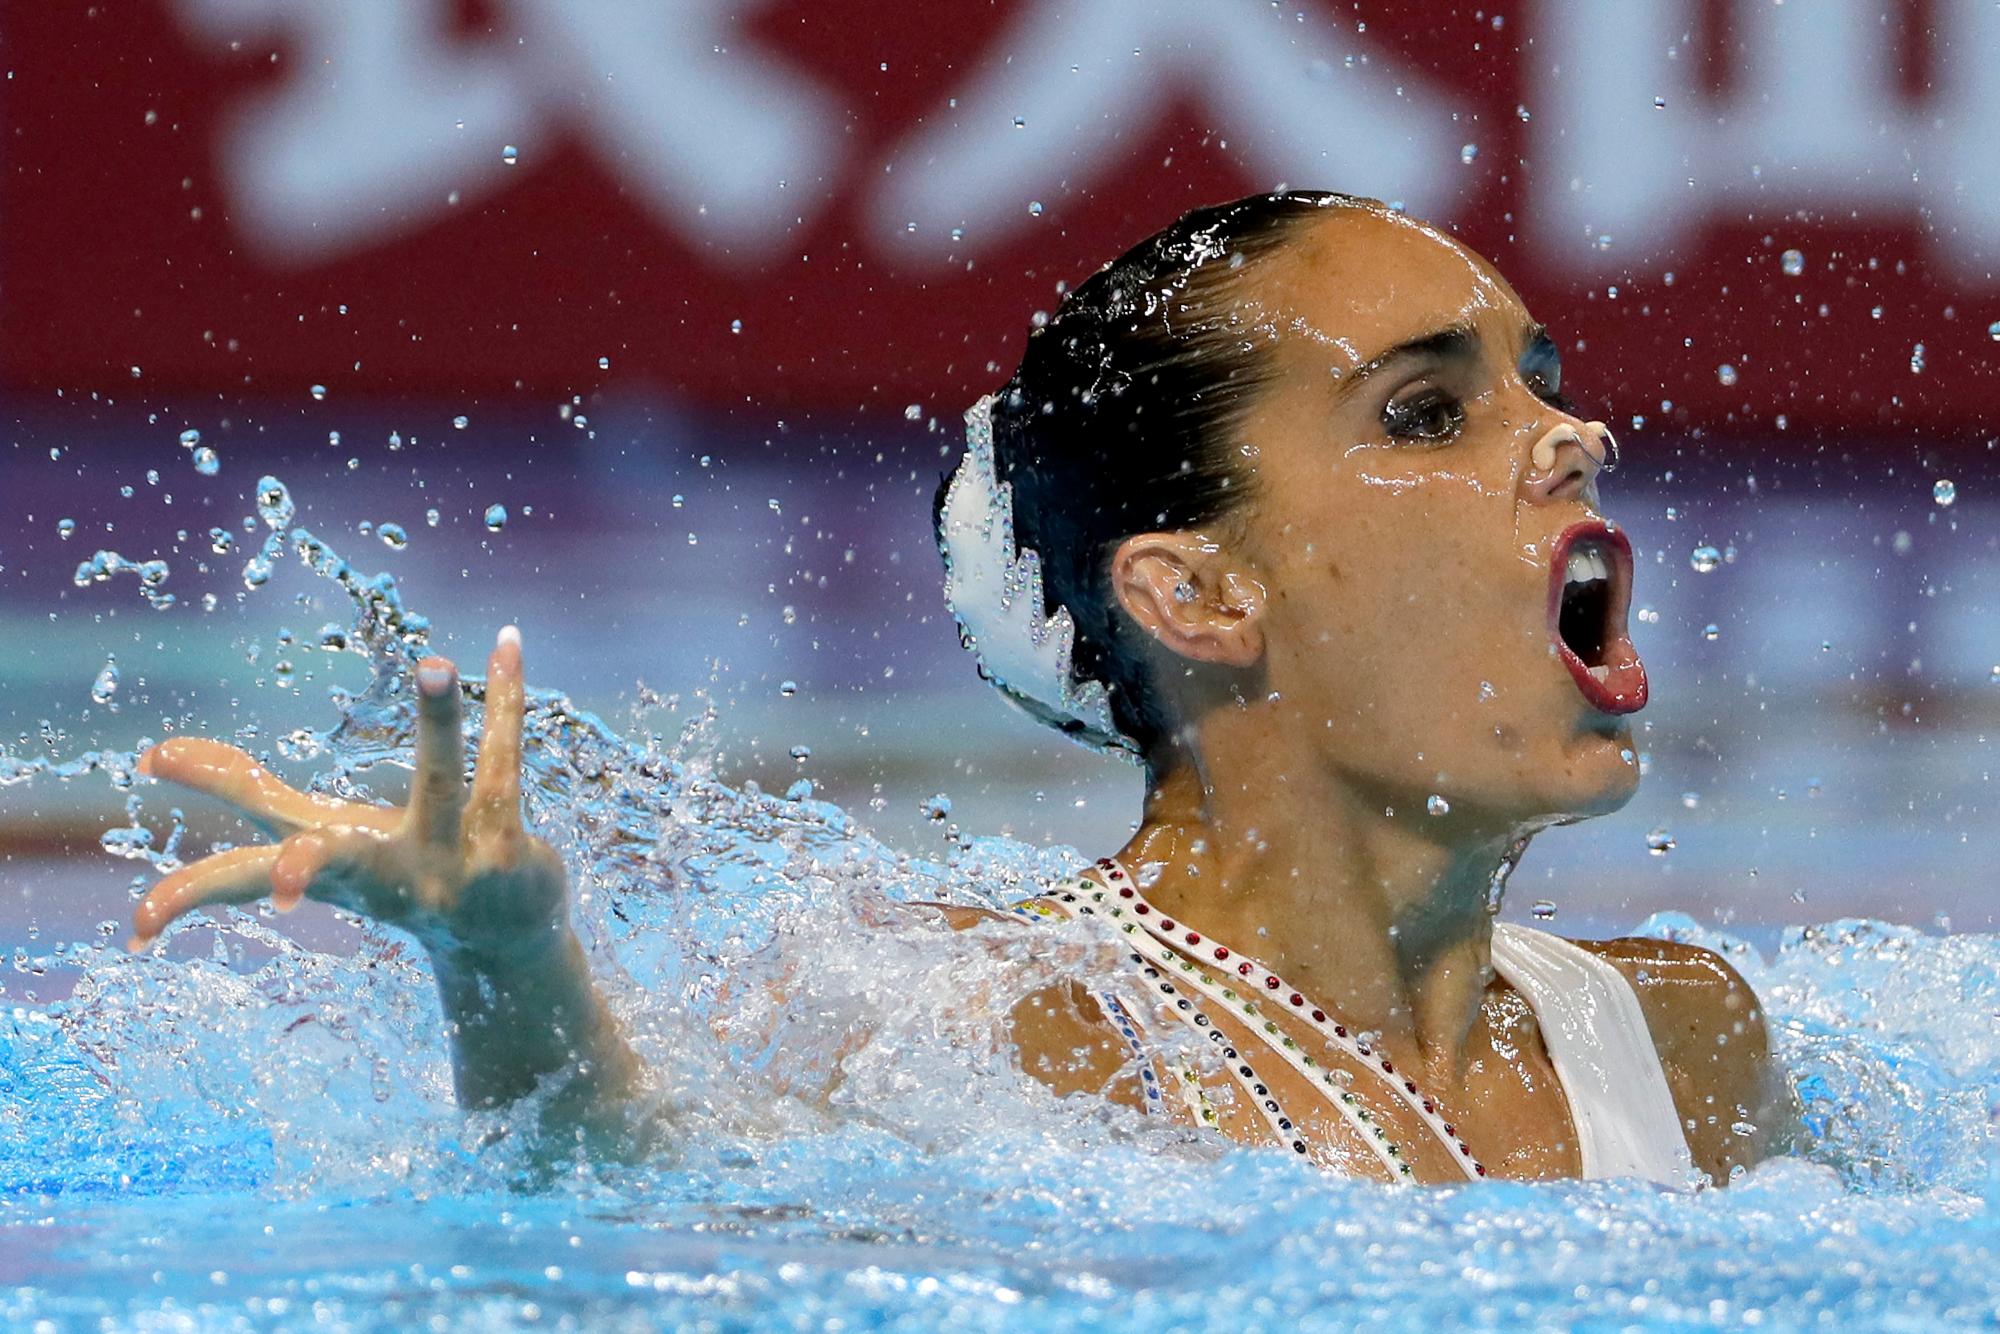 Ona Carbonell de España compite en los preliminares de la natación artística técnica en solitario en el Campeonato Mundial de Natación en Gwangju, Corea del Sur, viernes 12 de julio de 2019. 